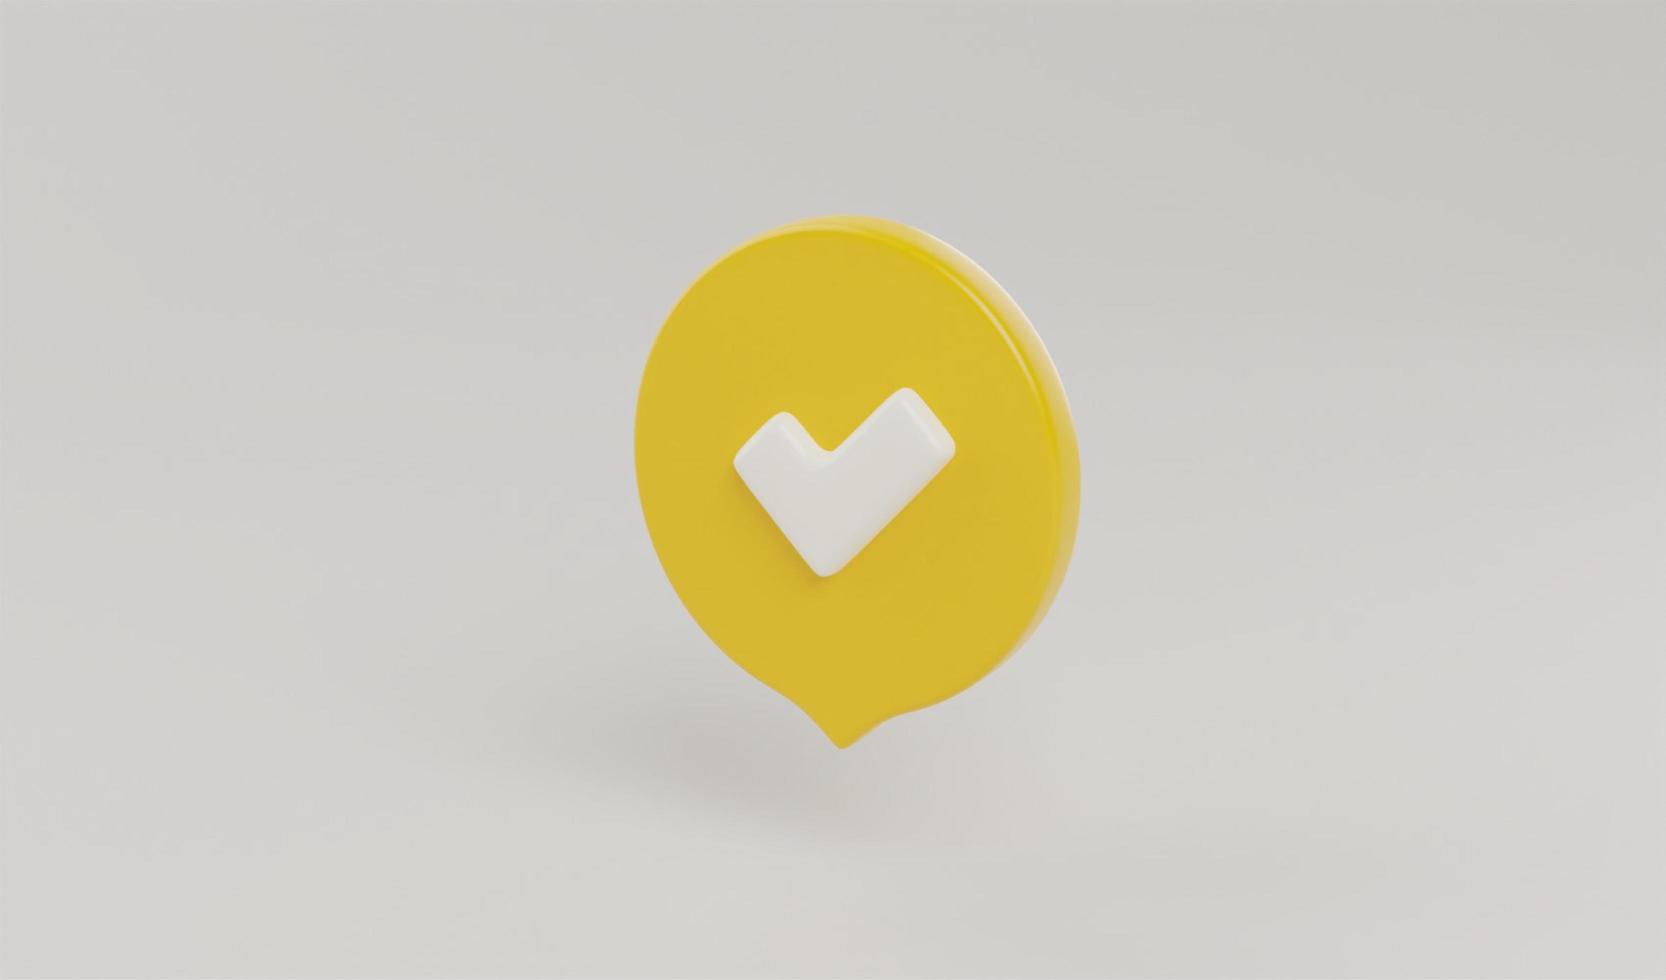 Icône de coche de rendu 3d, symbole de coche pour aimer, corriger, succès, approuver, accepter l'illustration de concept de bouton photo